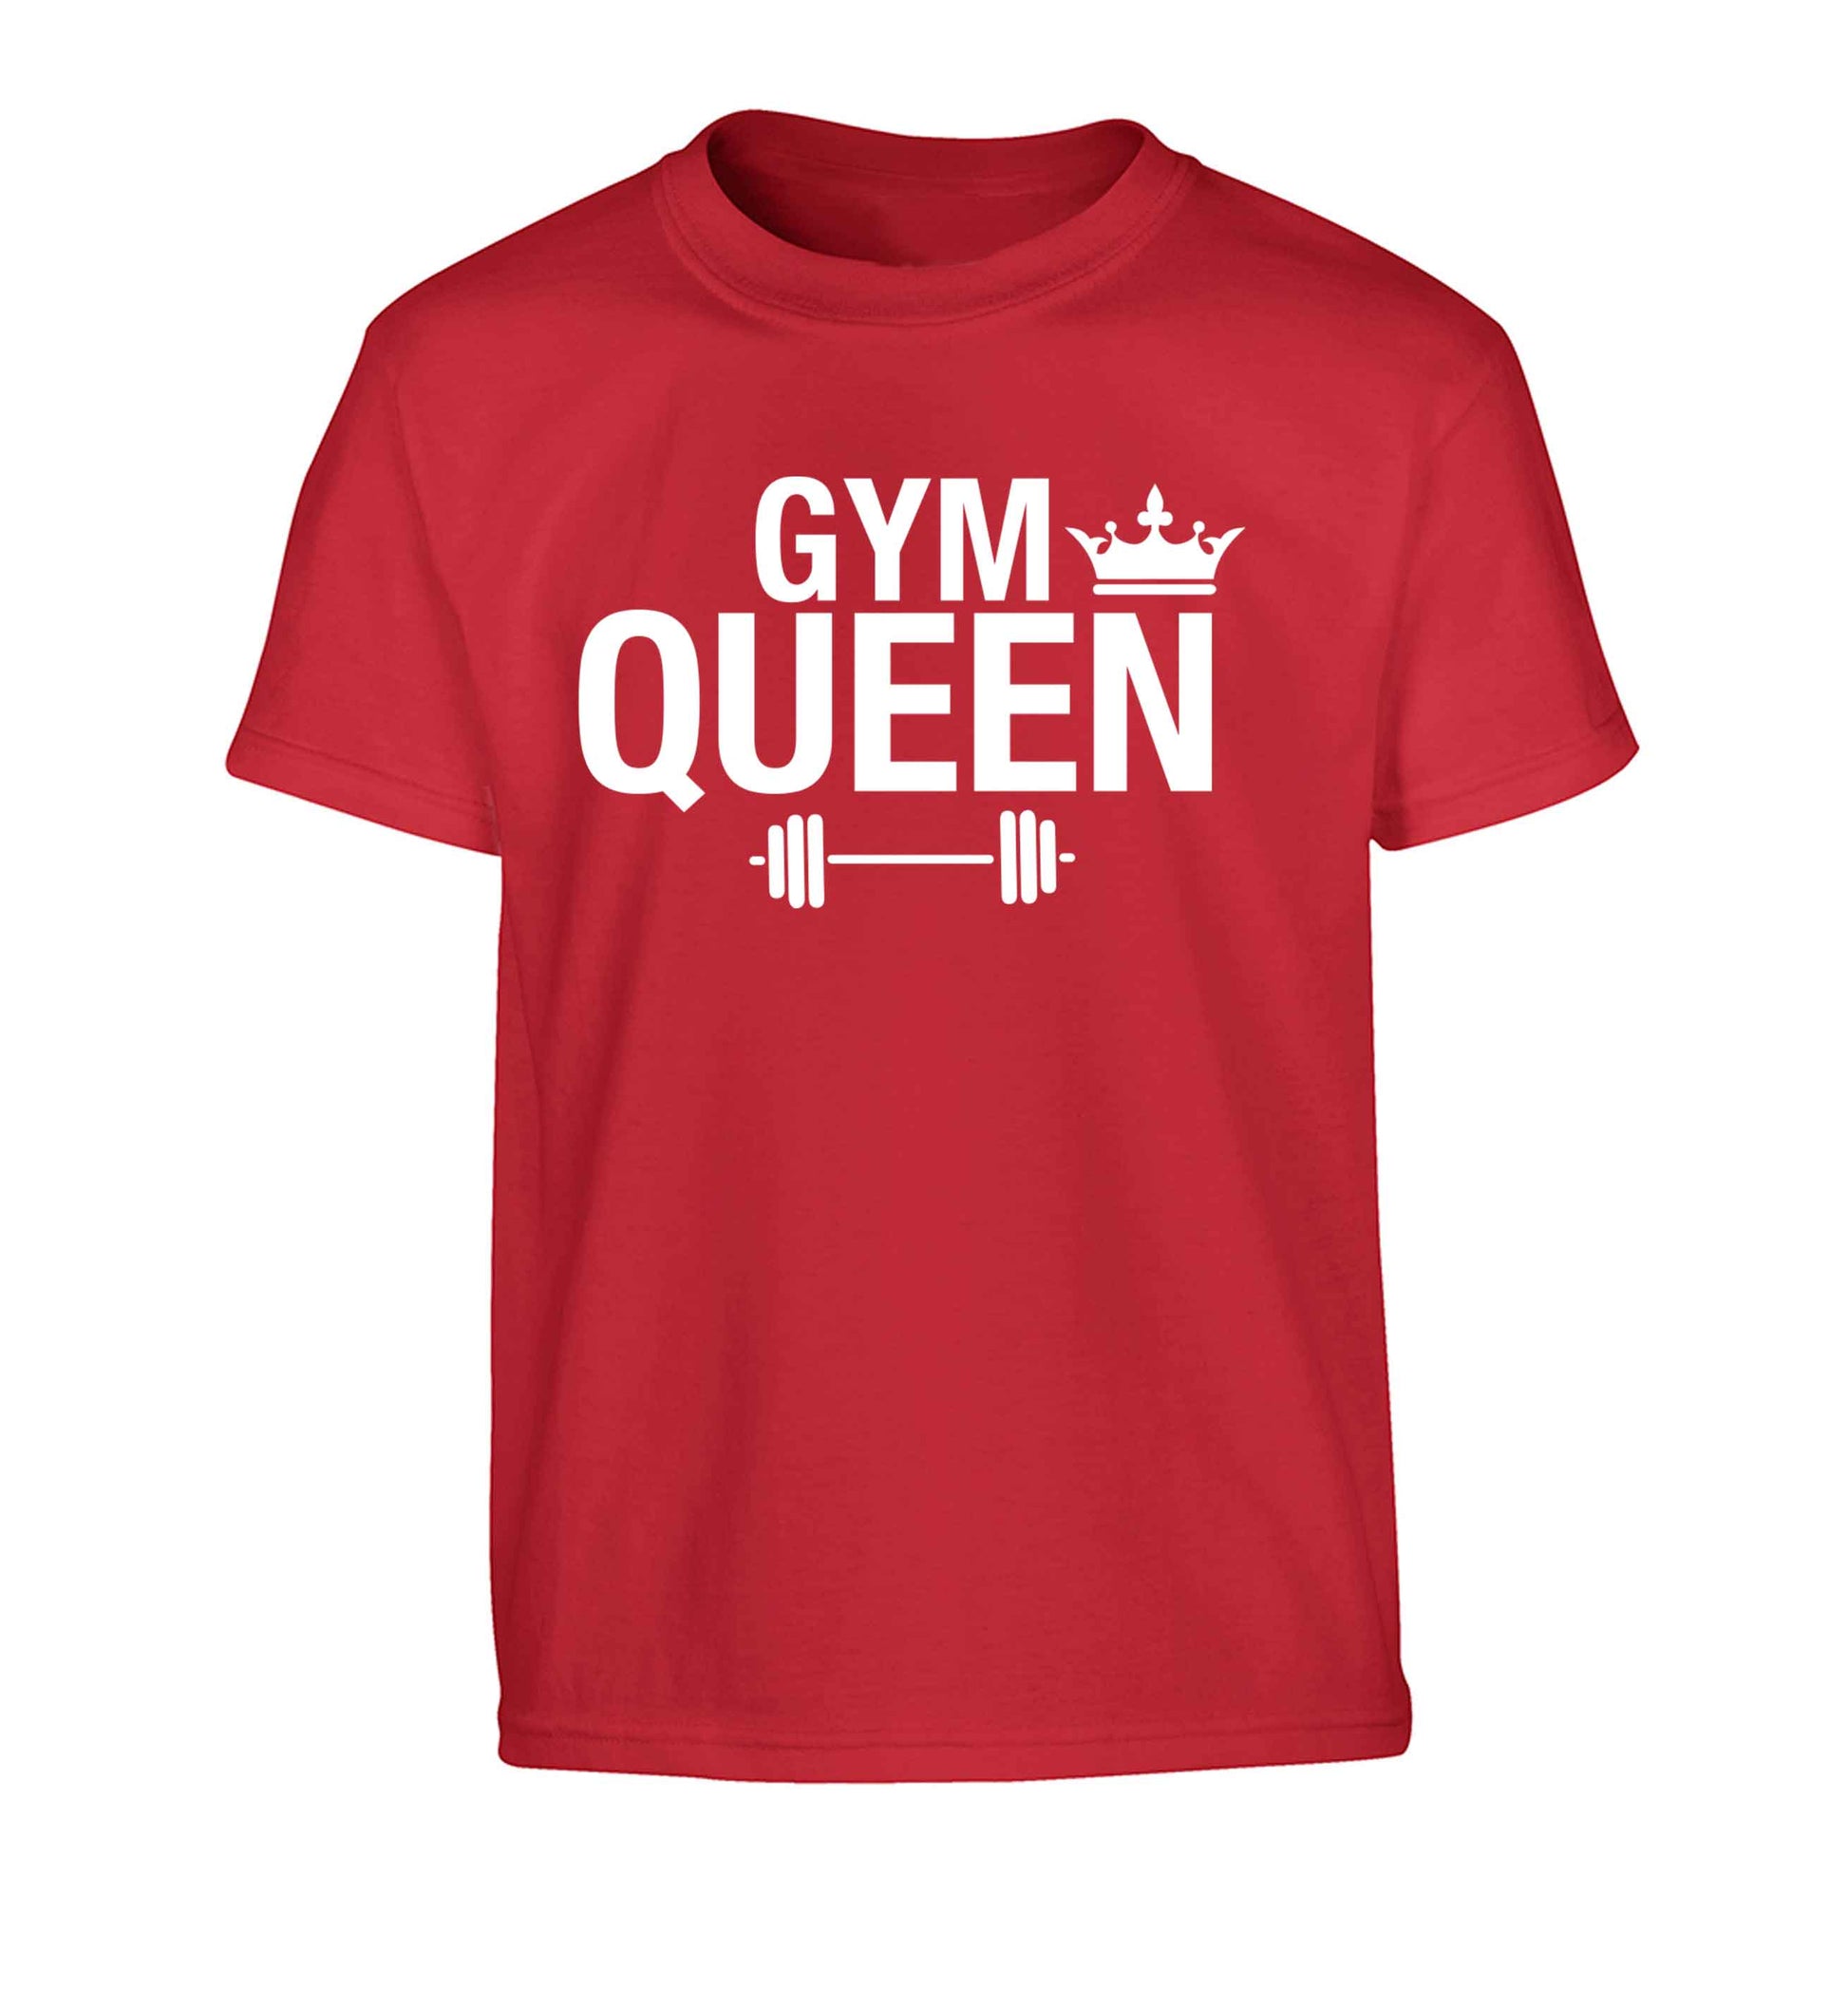 Gym queen Children's red Tshirt 12-13 Years